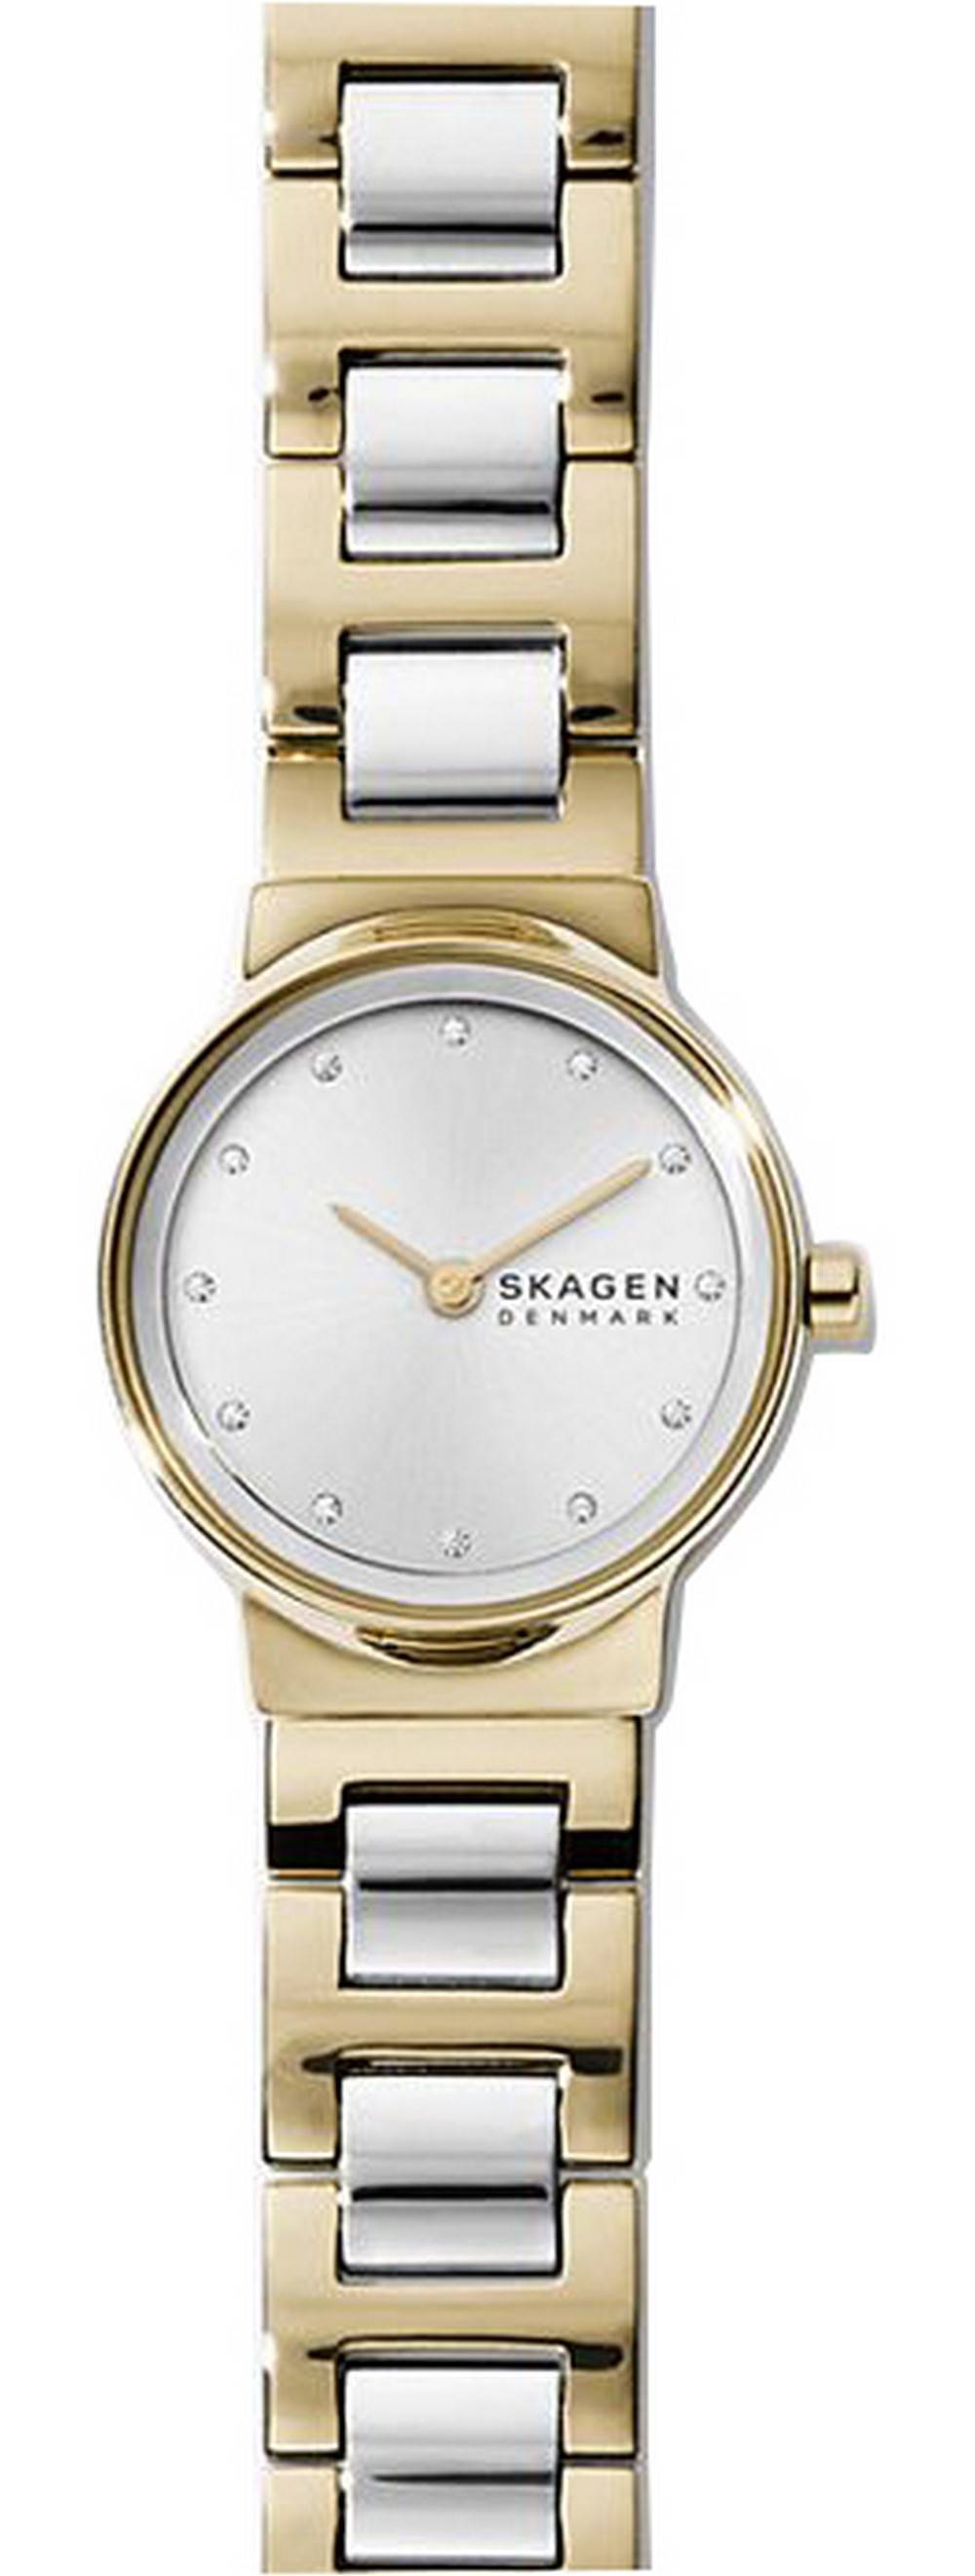 Voorloper Likken inhoudsopgave Goedkope Skagen horloges te koop - Creationwatches.com